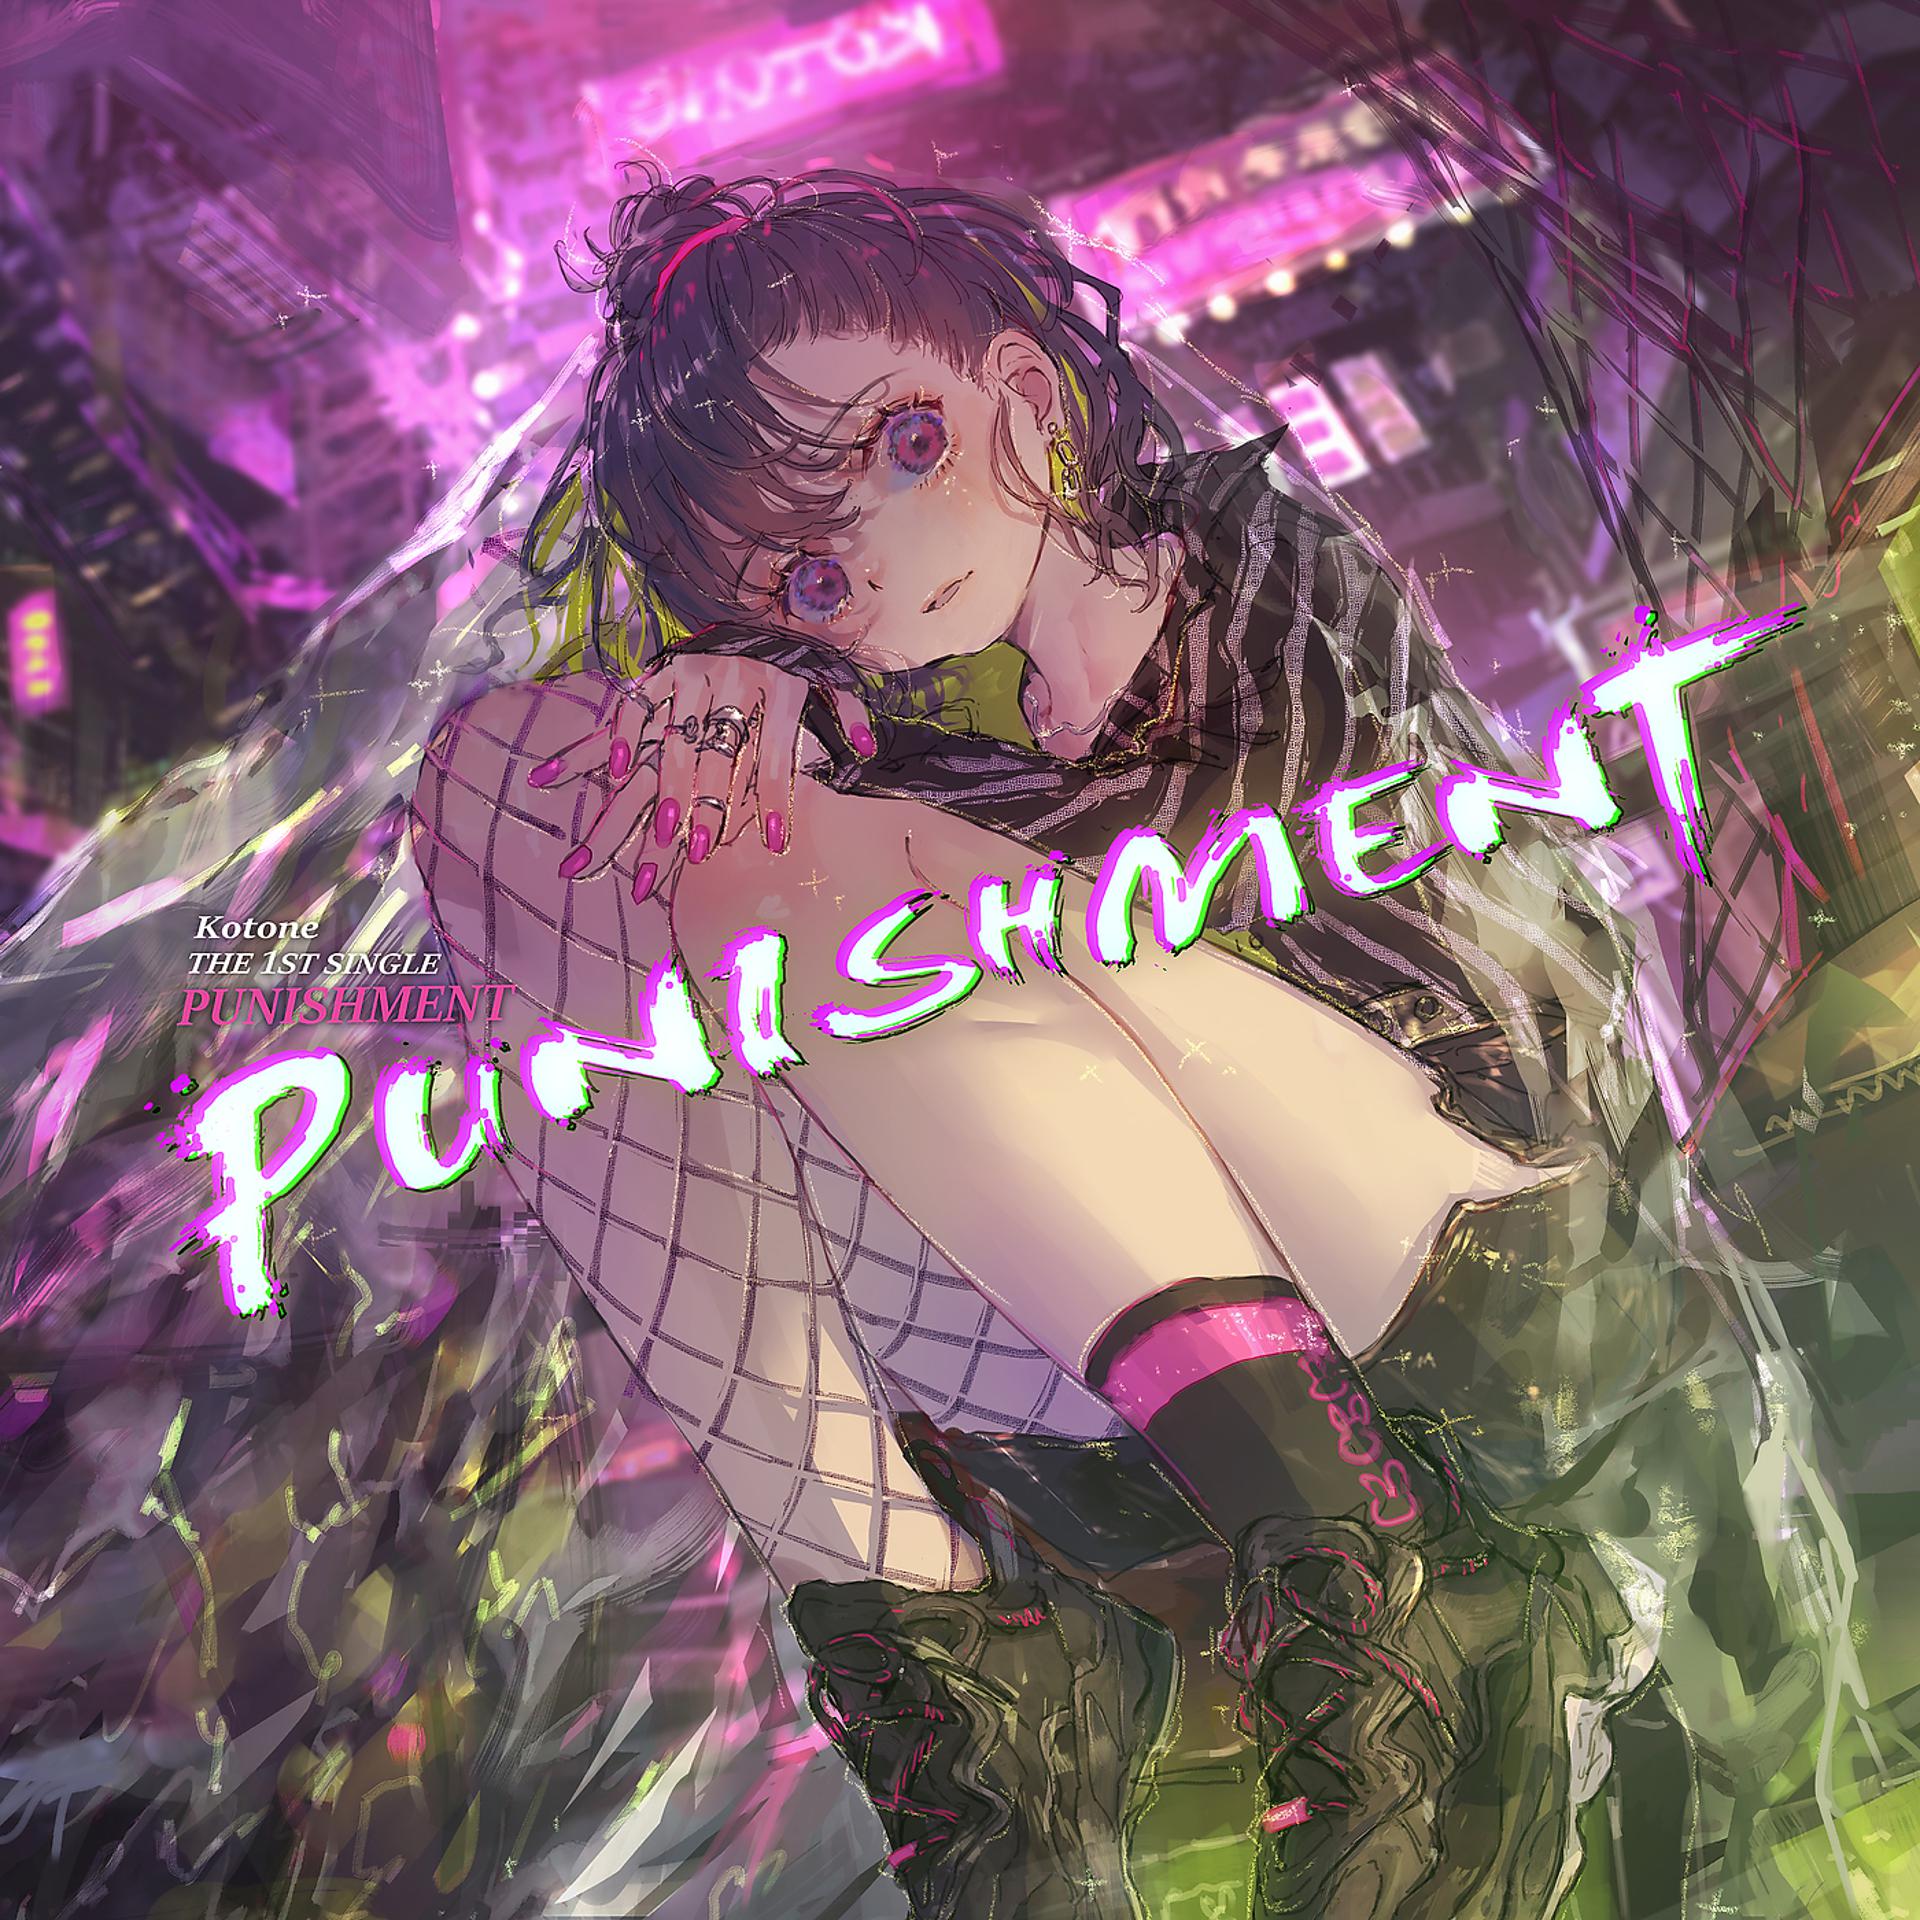 Постер альбома Punishment